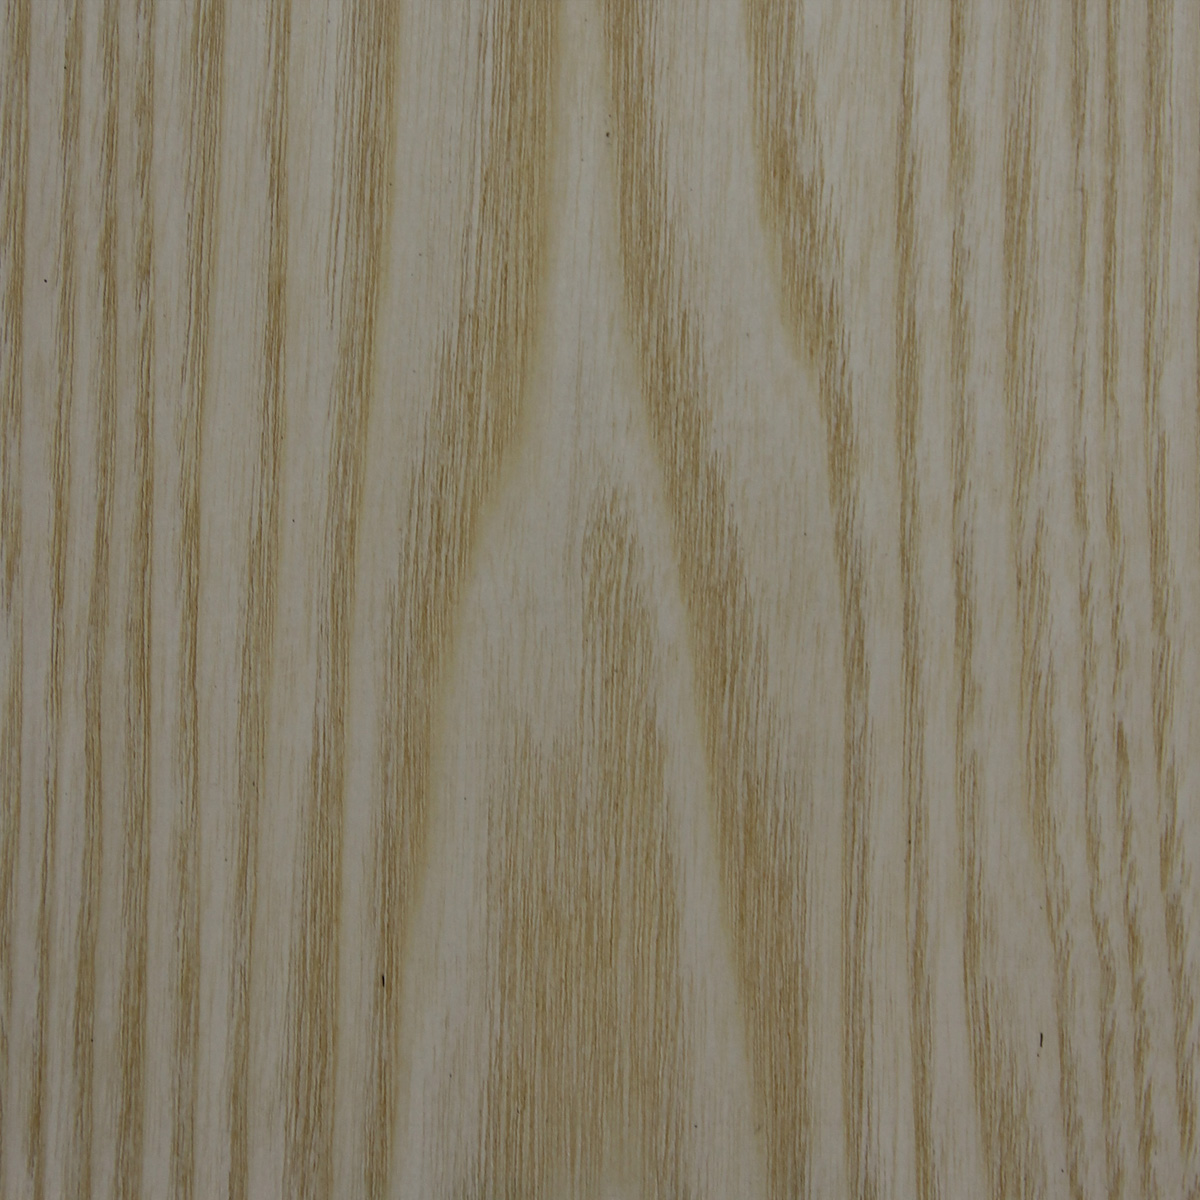 Ash, white Crown - Timber Veneer & Plywood Species